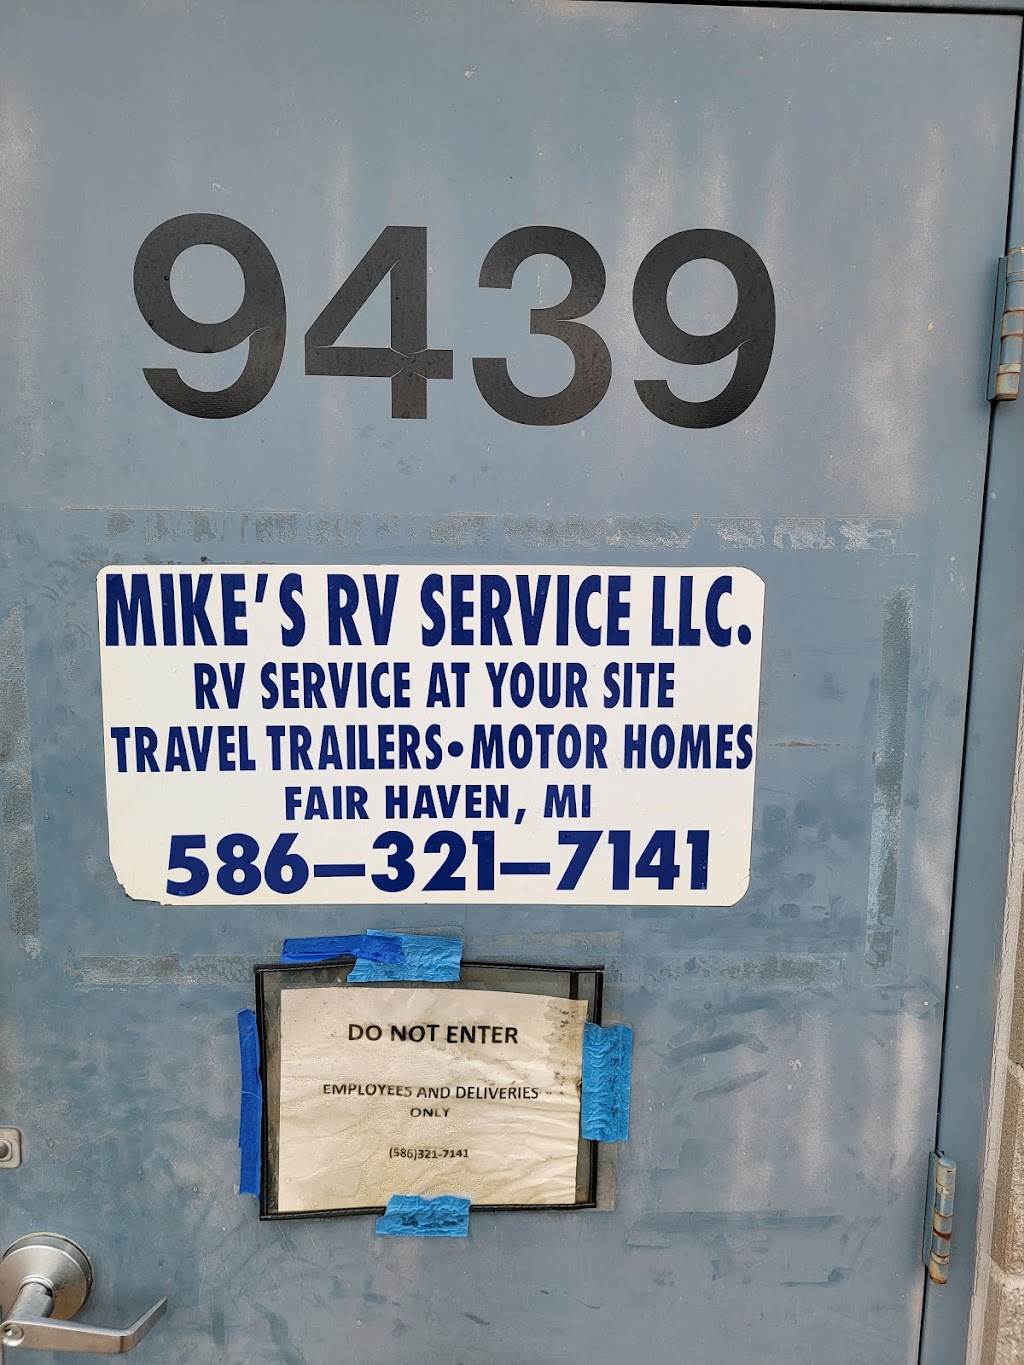 Mikes RV Services LLC | 9439 Marine City Hwy, Fair Haven, MI 48023 | Phone: (586) 321-7141